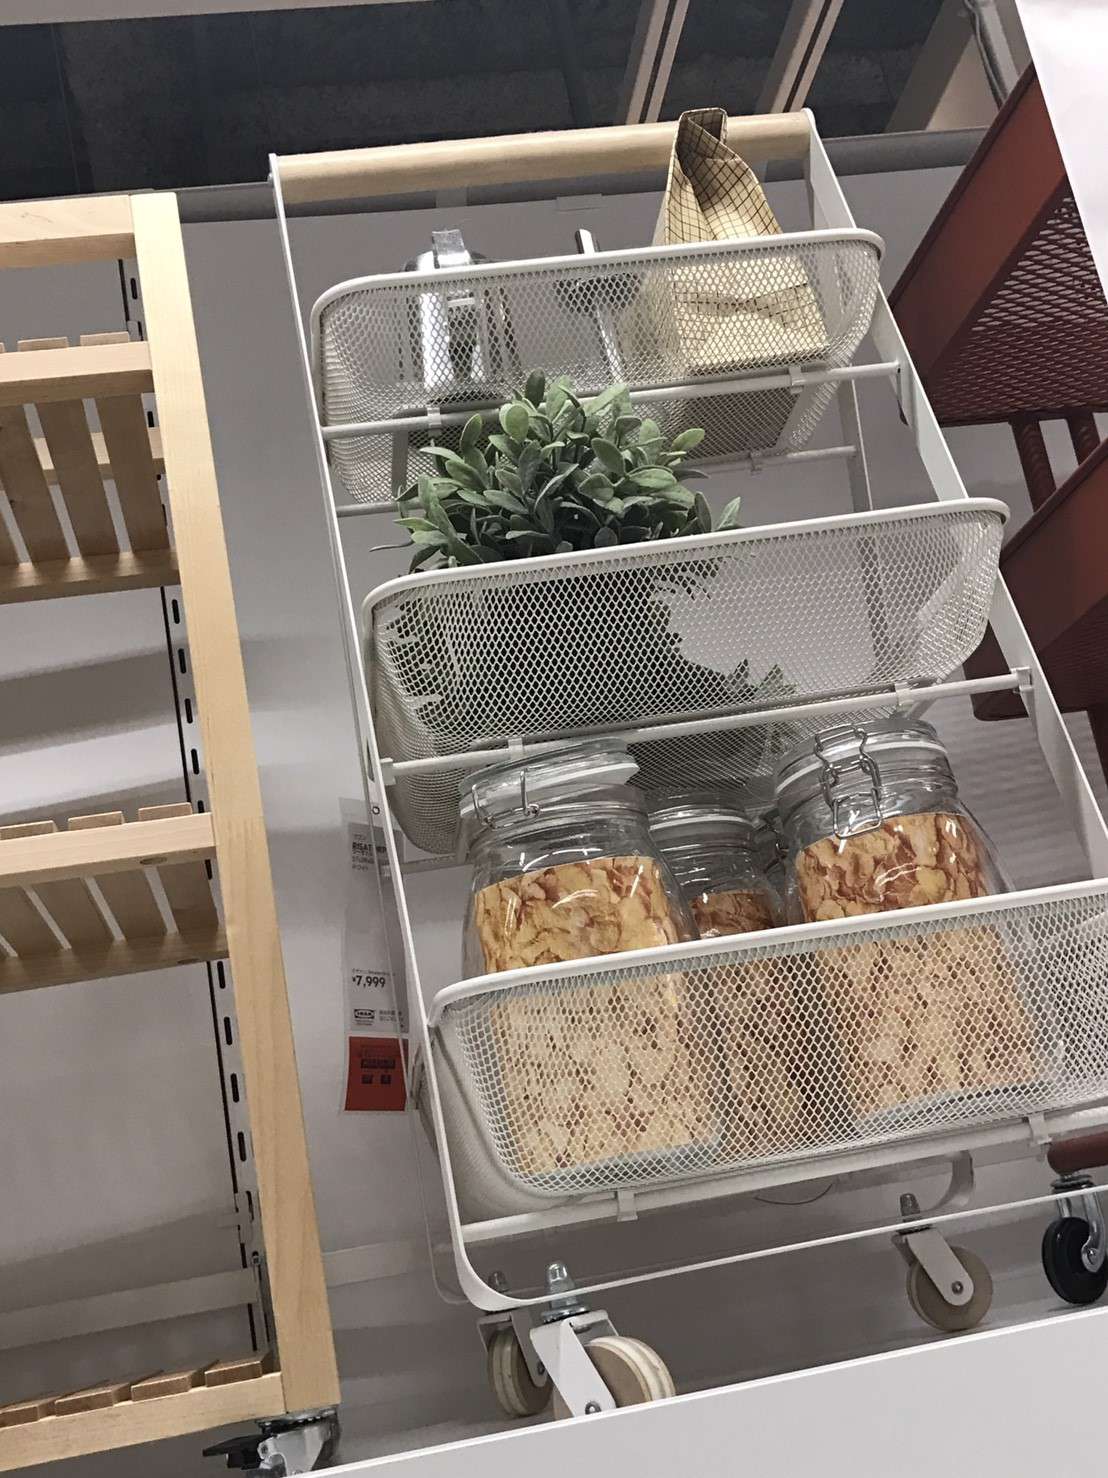 Ikeaのキッチンワゴンで調理カウンターの収納をおしゃれに改善 おすすめ7選を徹底比較 北欧家具ブログ